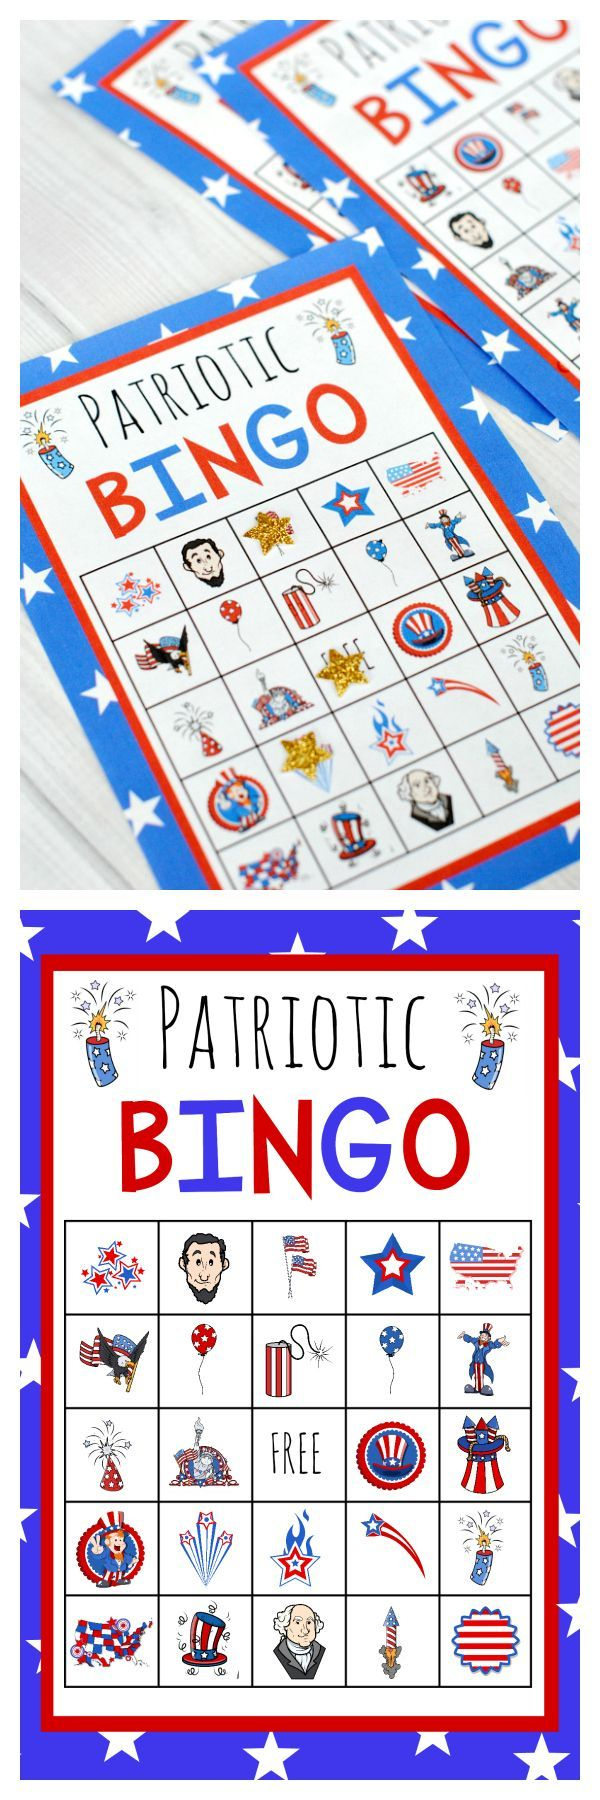 Patriotic Bingo Cards Printable